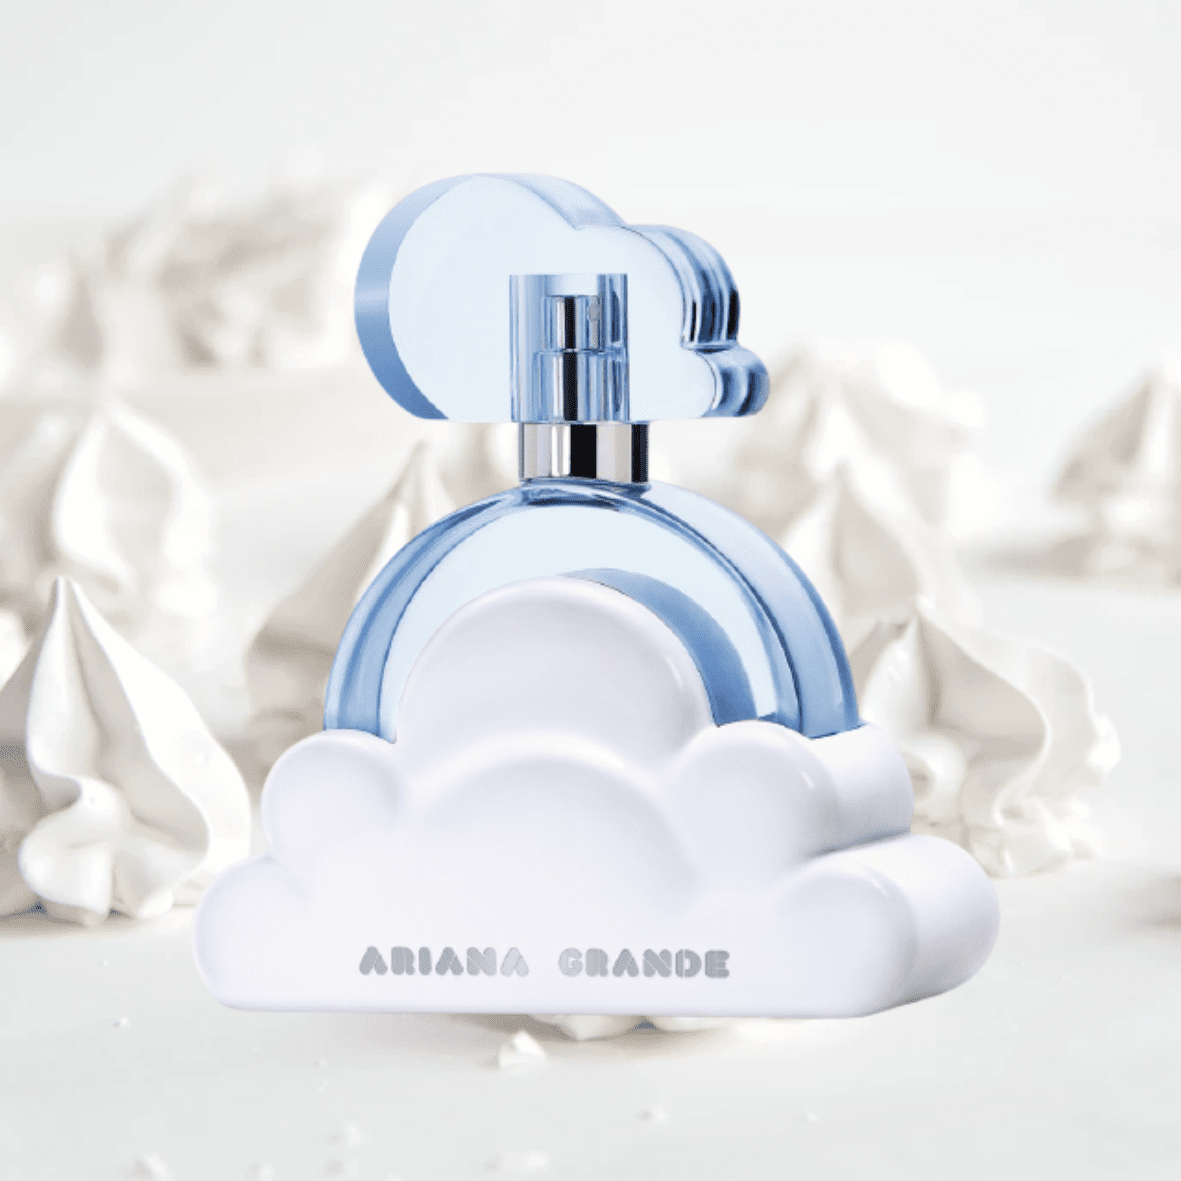 Ariana Grande Cloud
Best Milky Perfumes